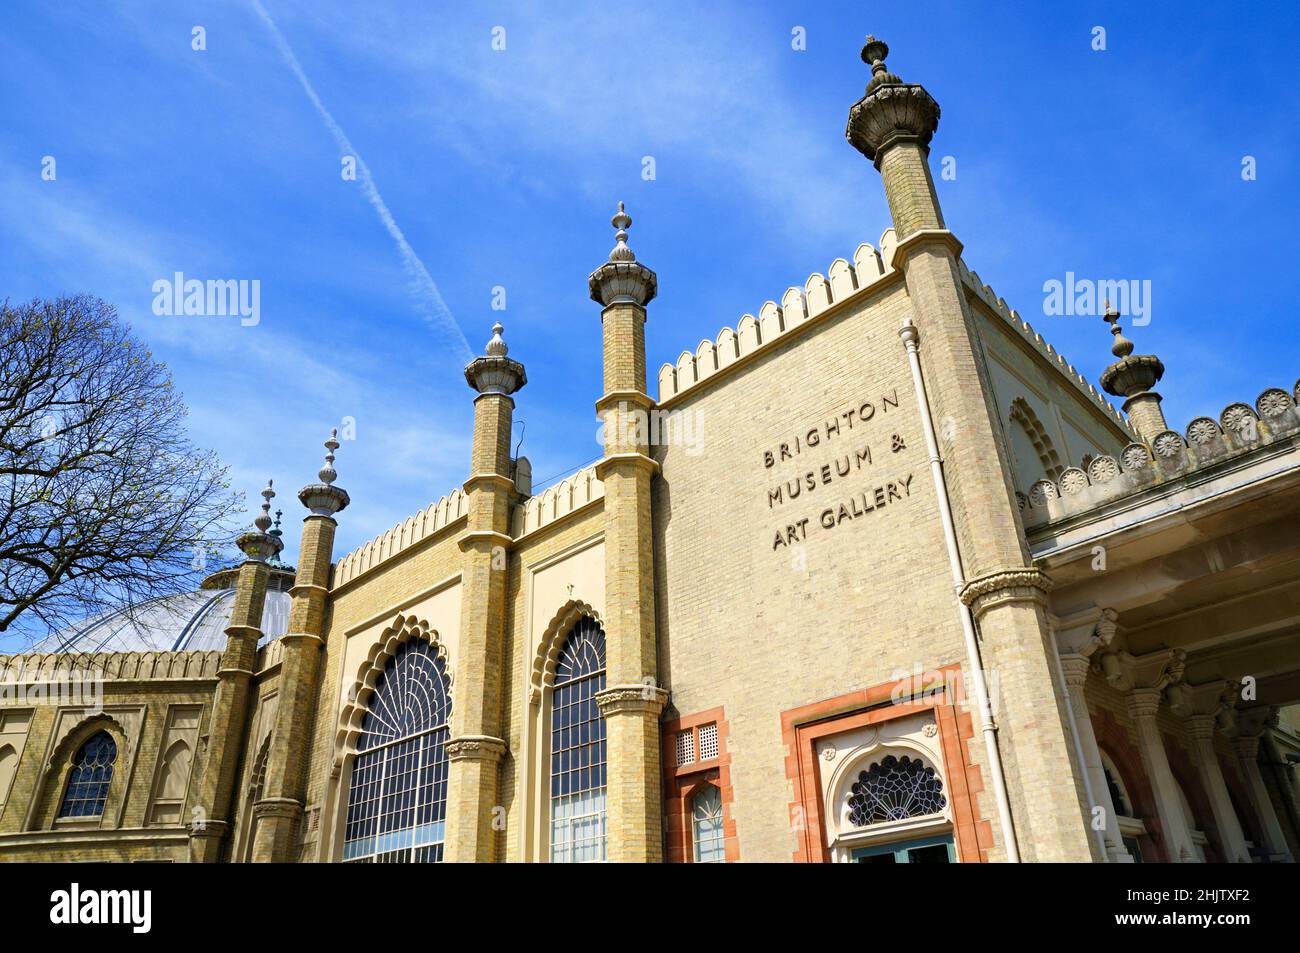 Musée et galerie d'art de Brighton dans les jardins du Pavillon Royal, Brighton, East Sussex, Angleterre, Royaume-Uni Banque D'Images